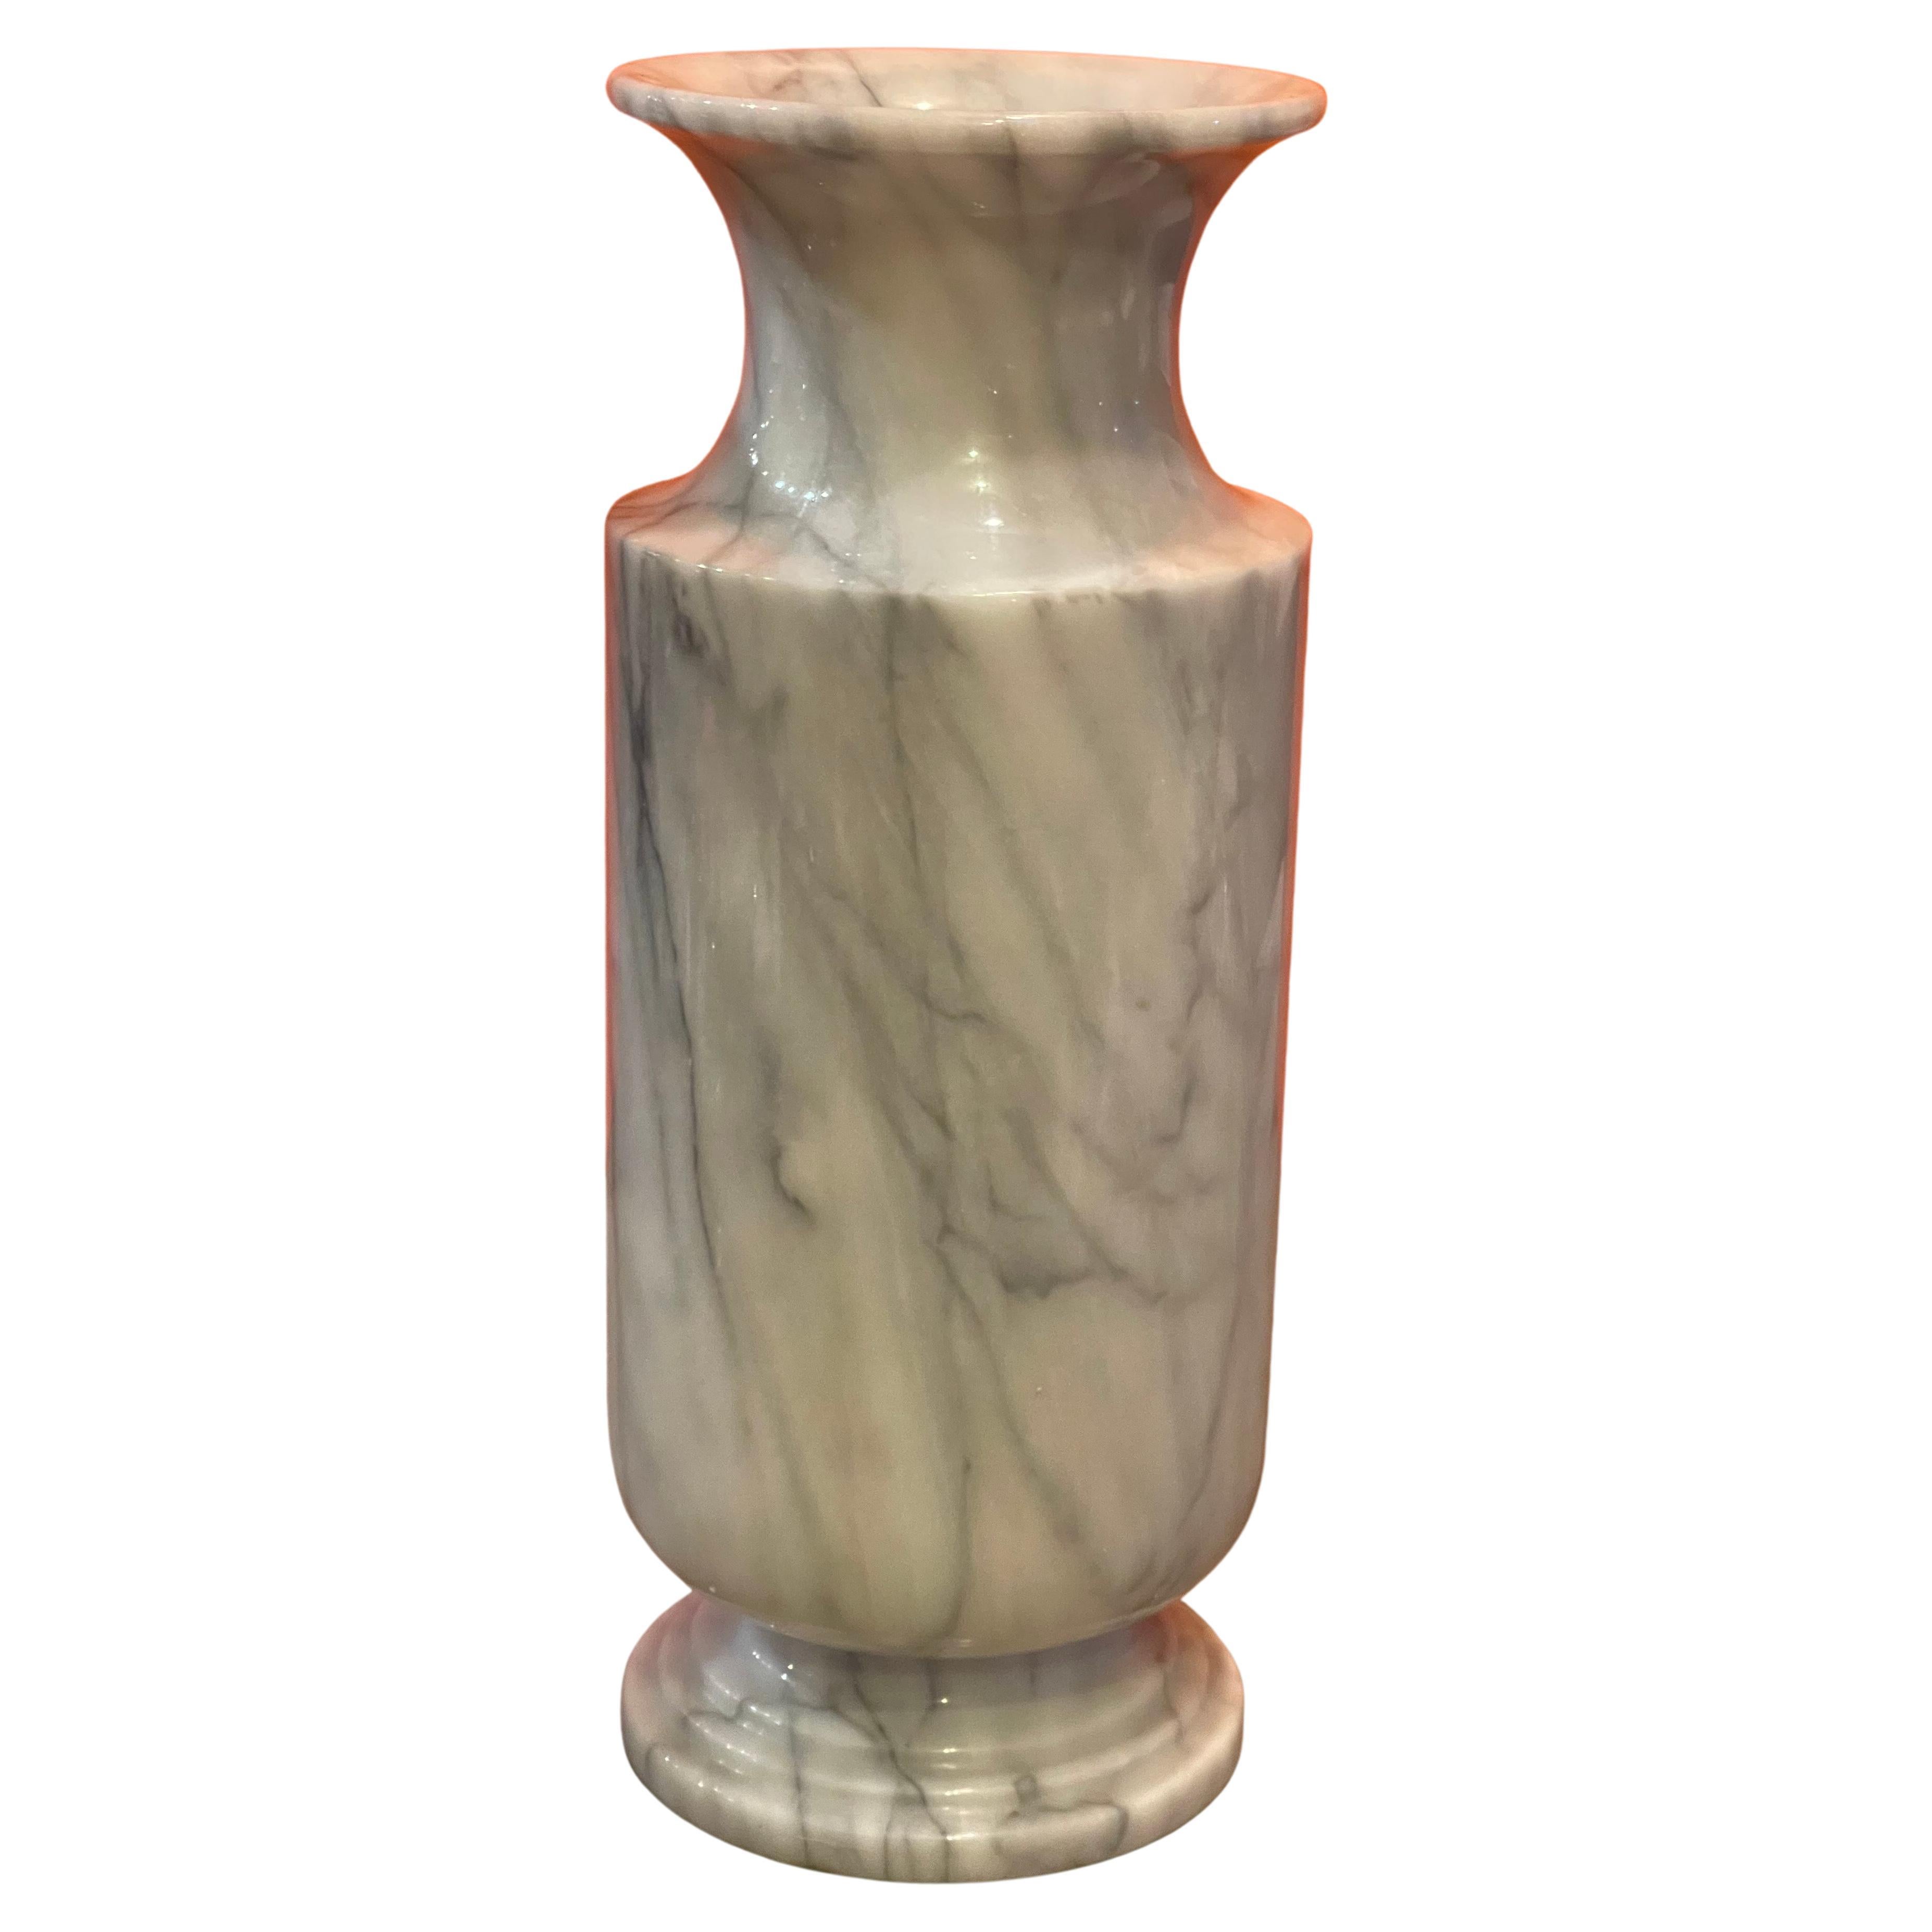 Große postmoderne Vase aus italienischem Carrara-Marmor, ca. 1970er Jahre. Die Vase ist überwiegend weiß mit grauen und schwarzen Äderungen. Die Vase ist in sehr gutem Vintage-Zustand ohne Chips oder Risse und misst 7,5 